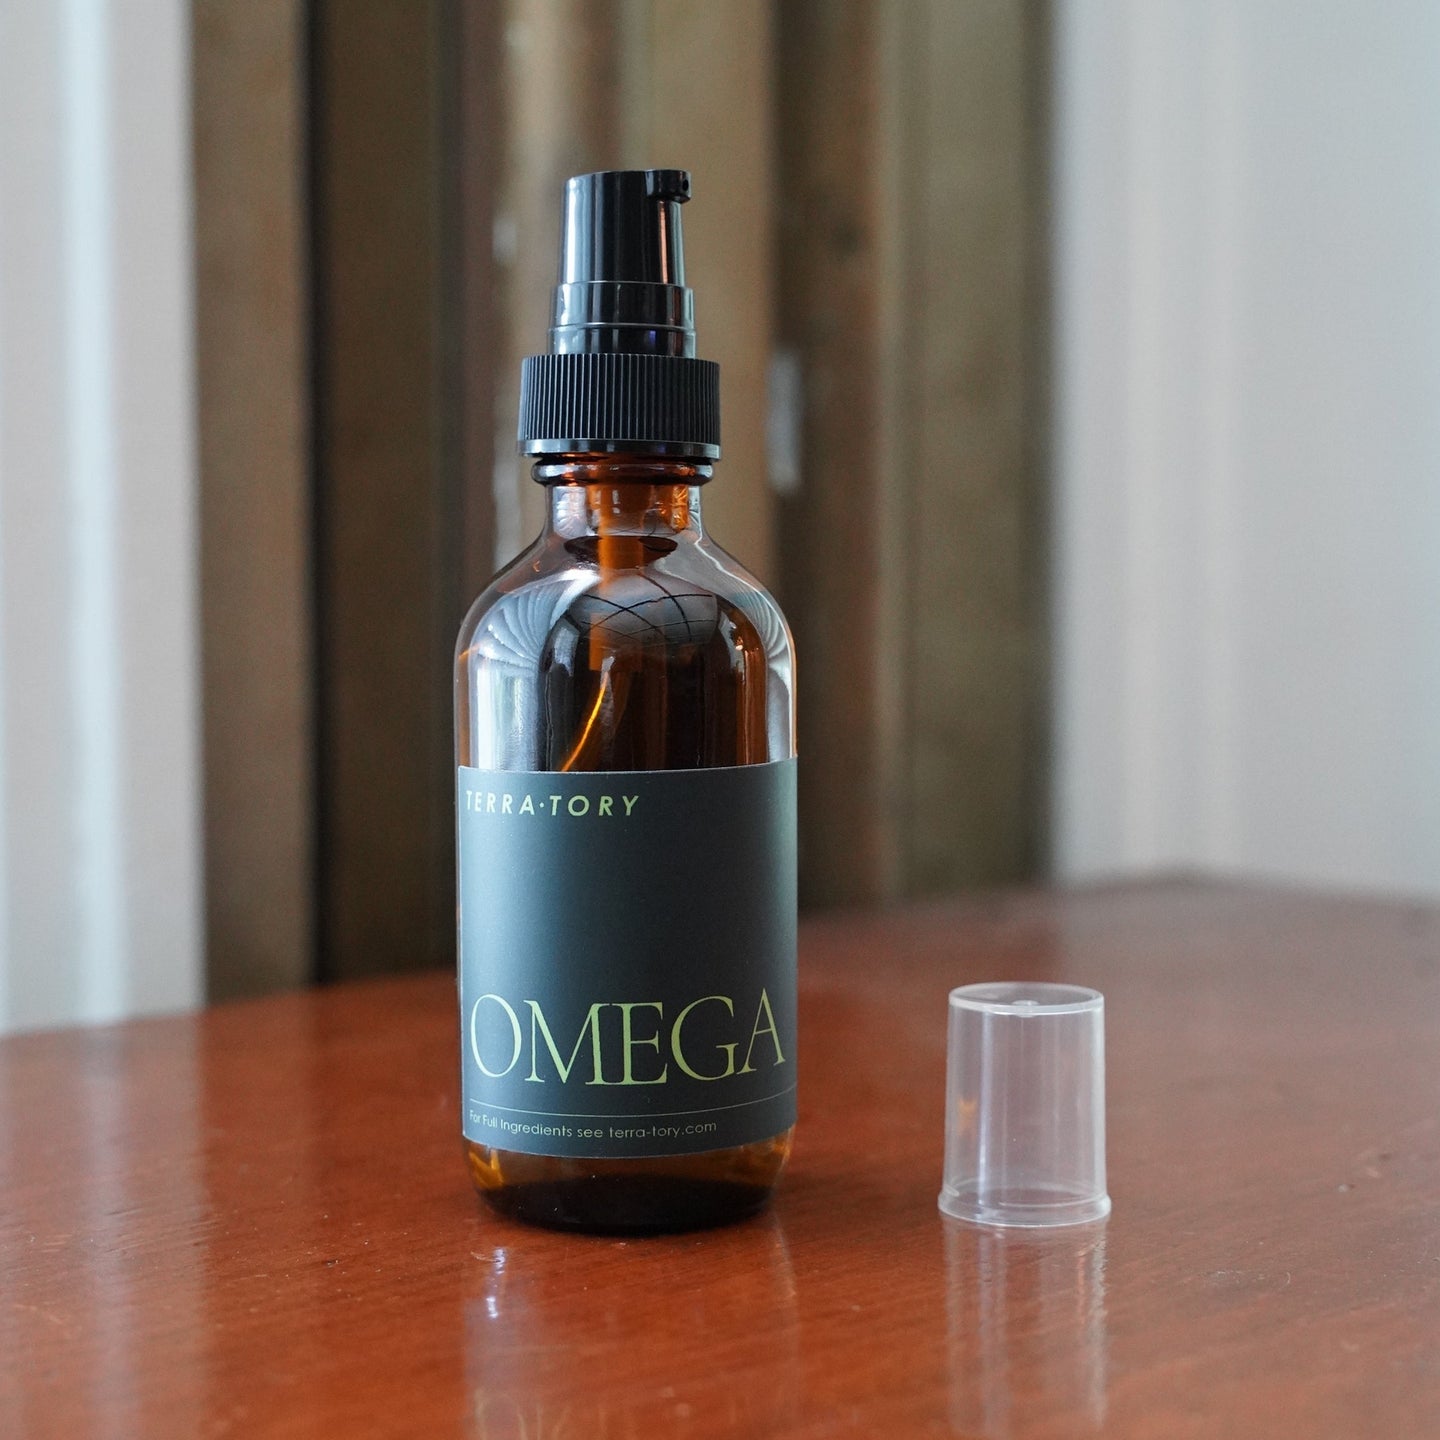 Omega Body Oil